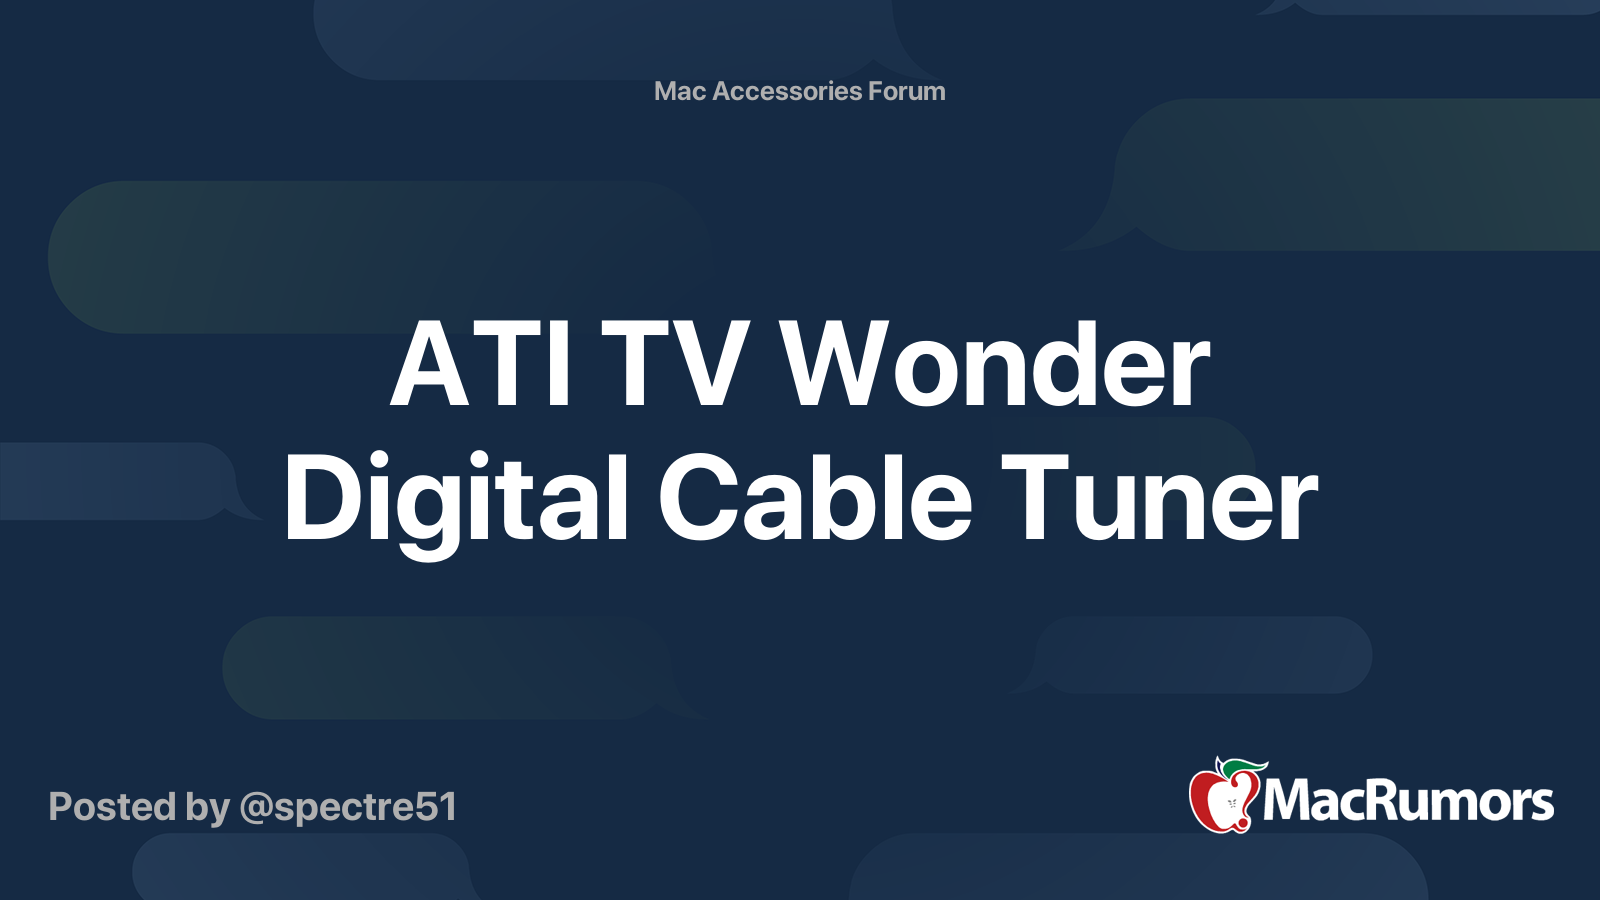 ati-tv-wonder-digital-cable-tuner-macrumors-forums